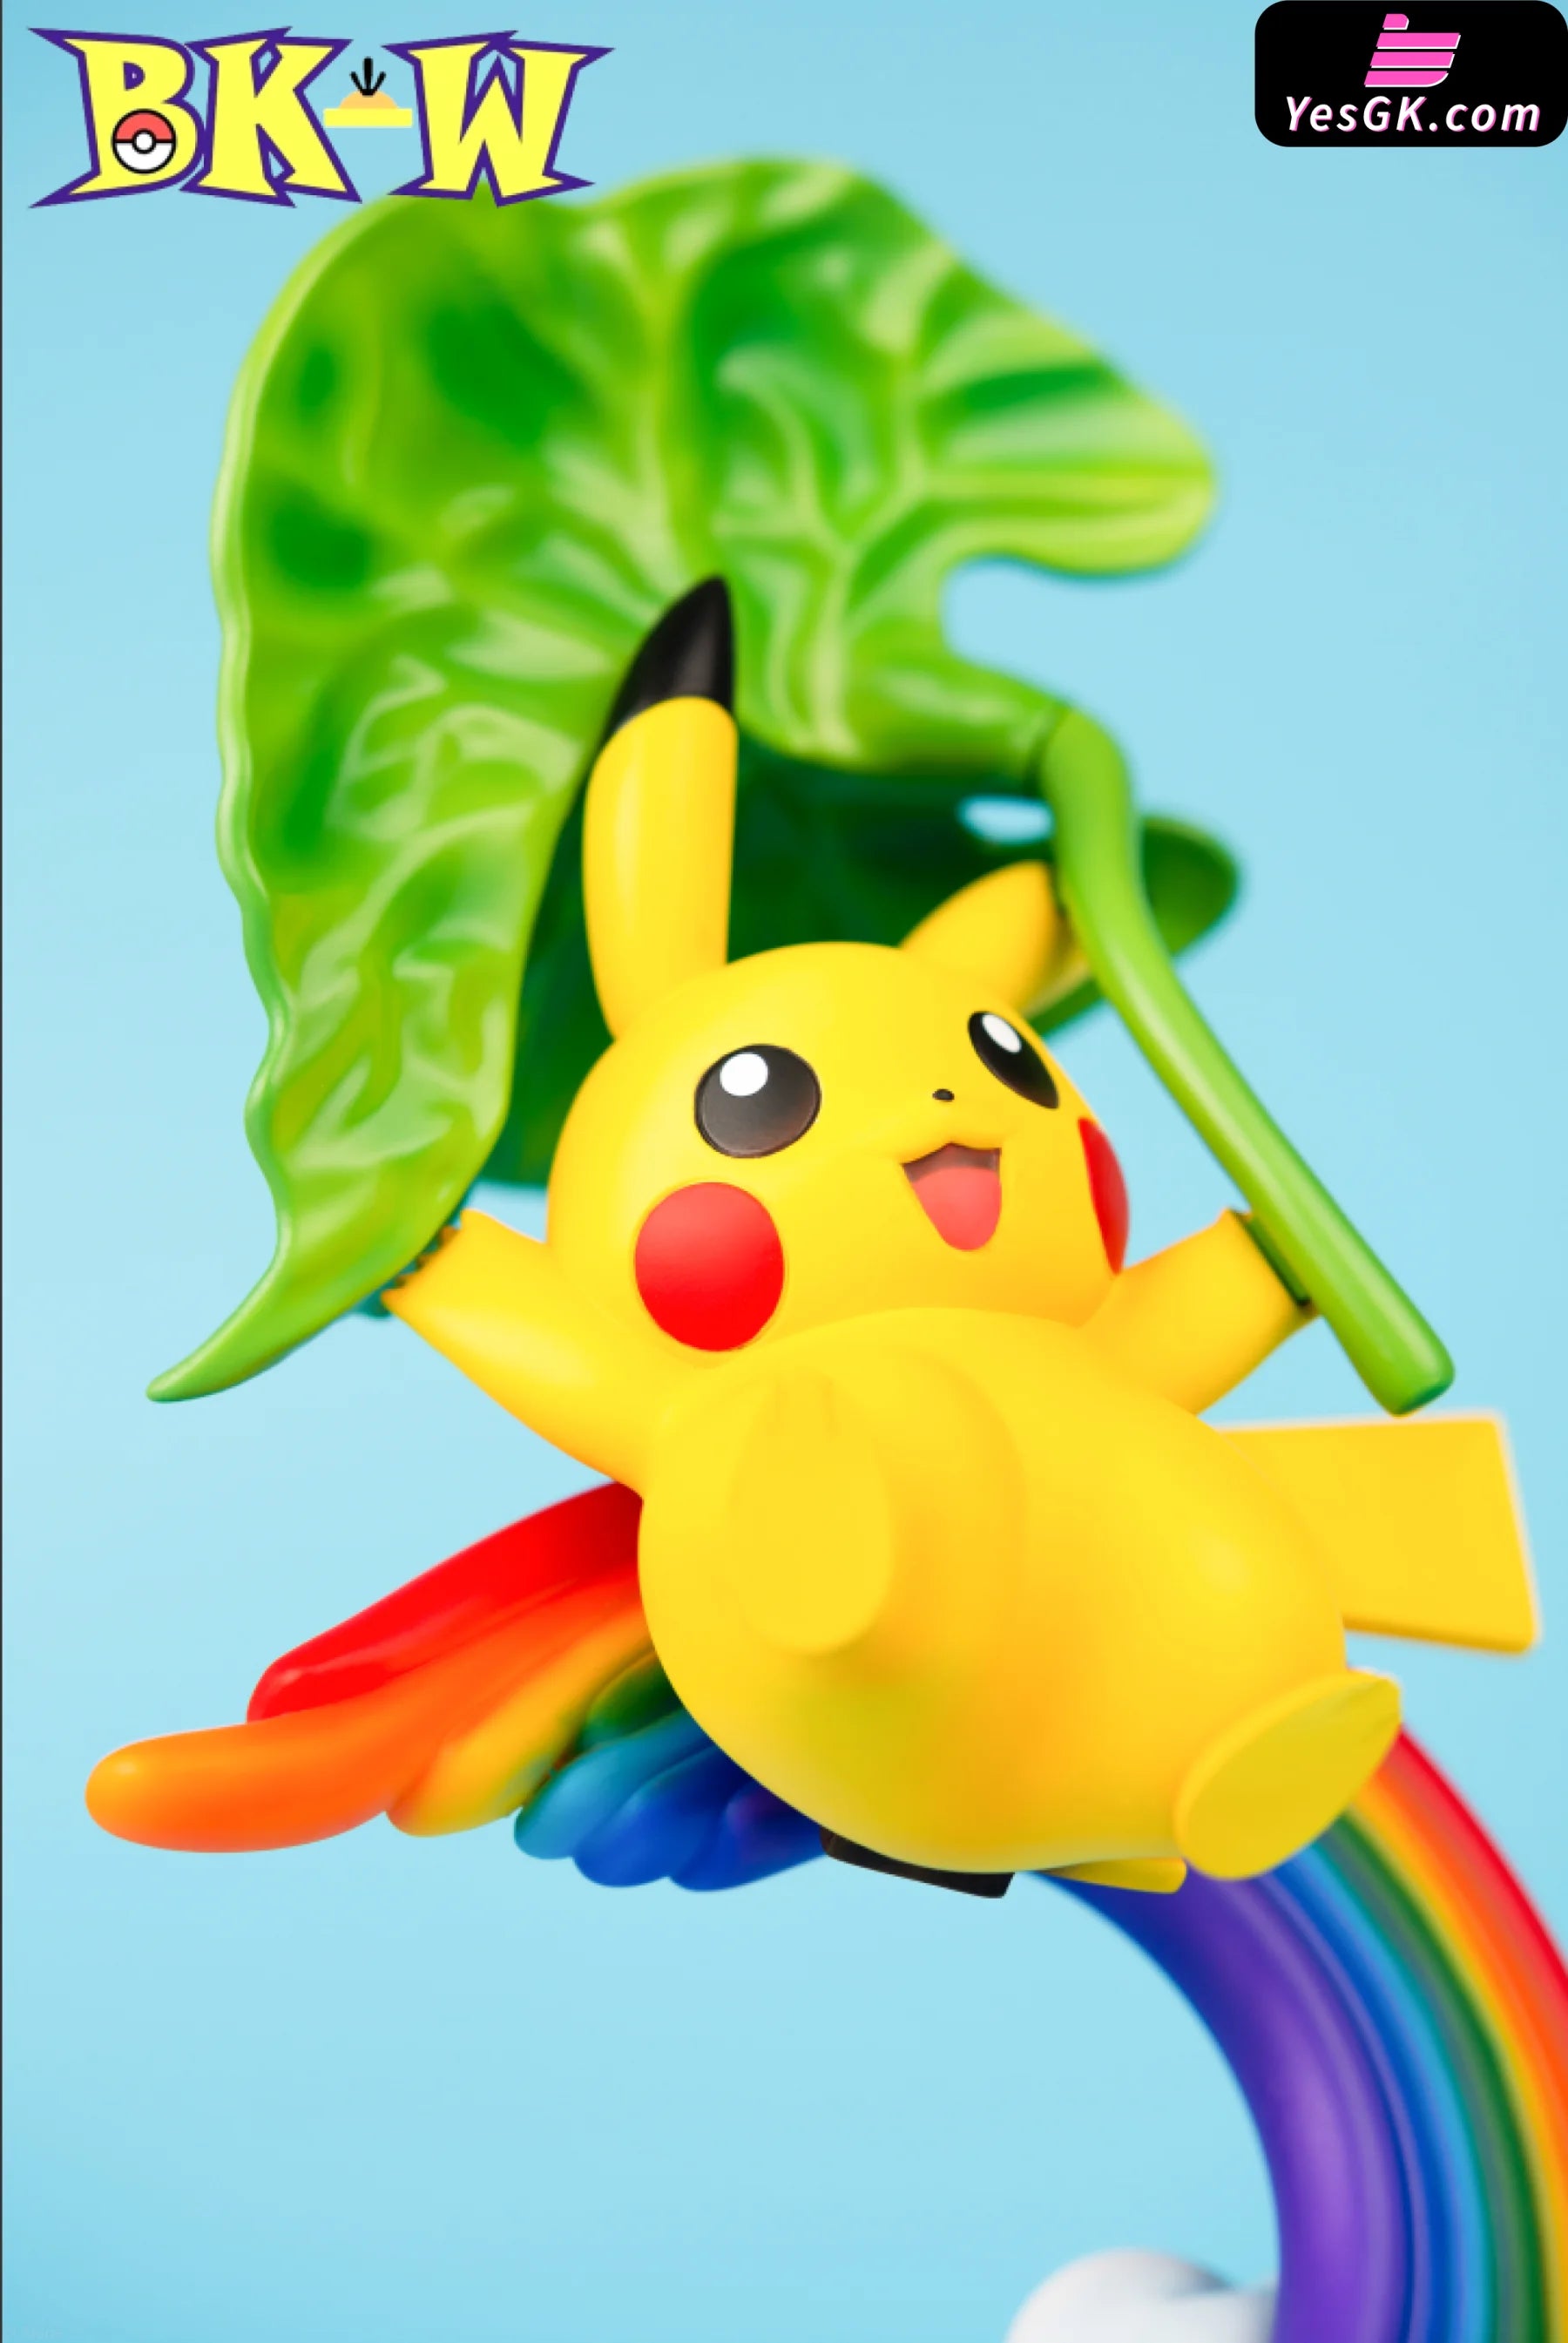 Pokémon Rainbow Pikachu Statue - Bkw Club Studio [Pre-Order]